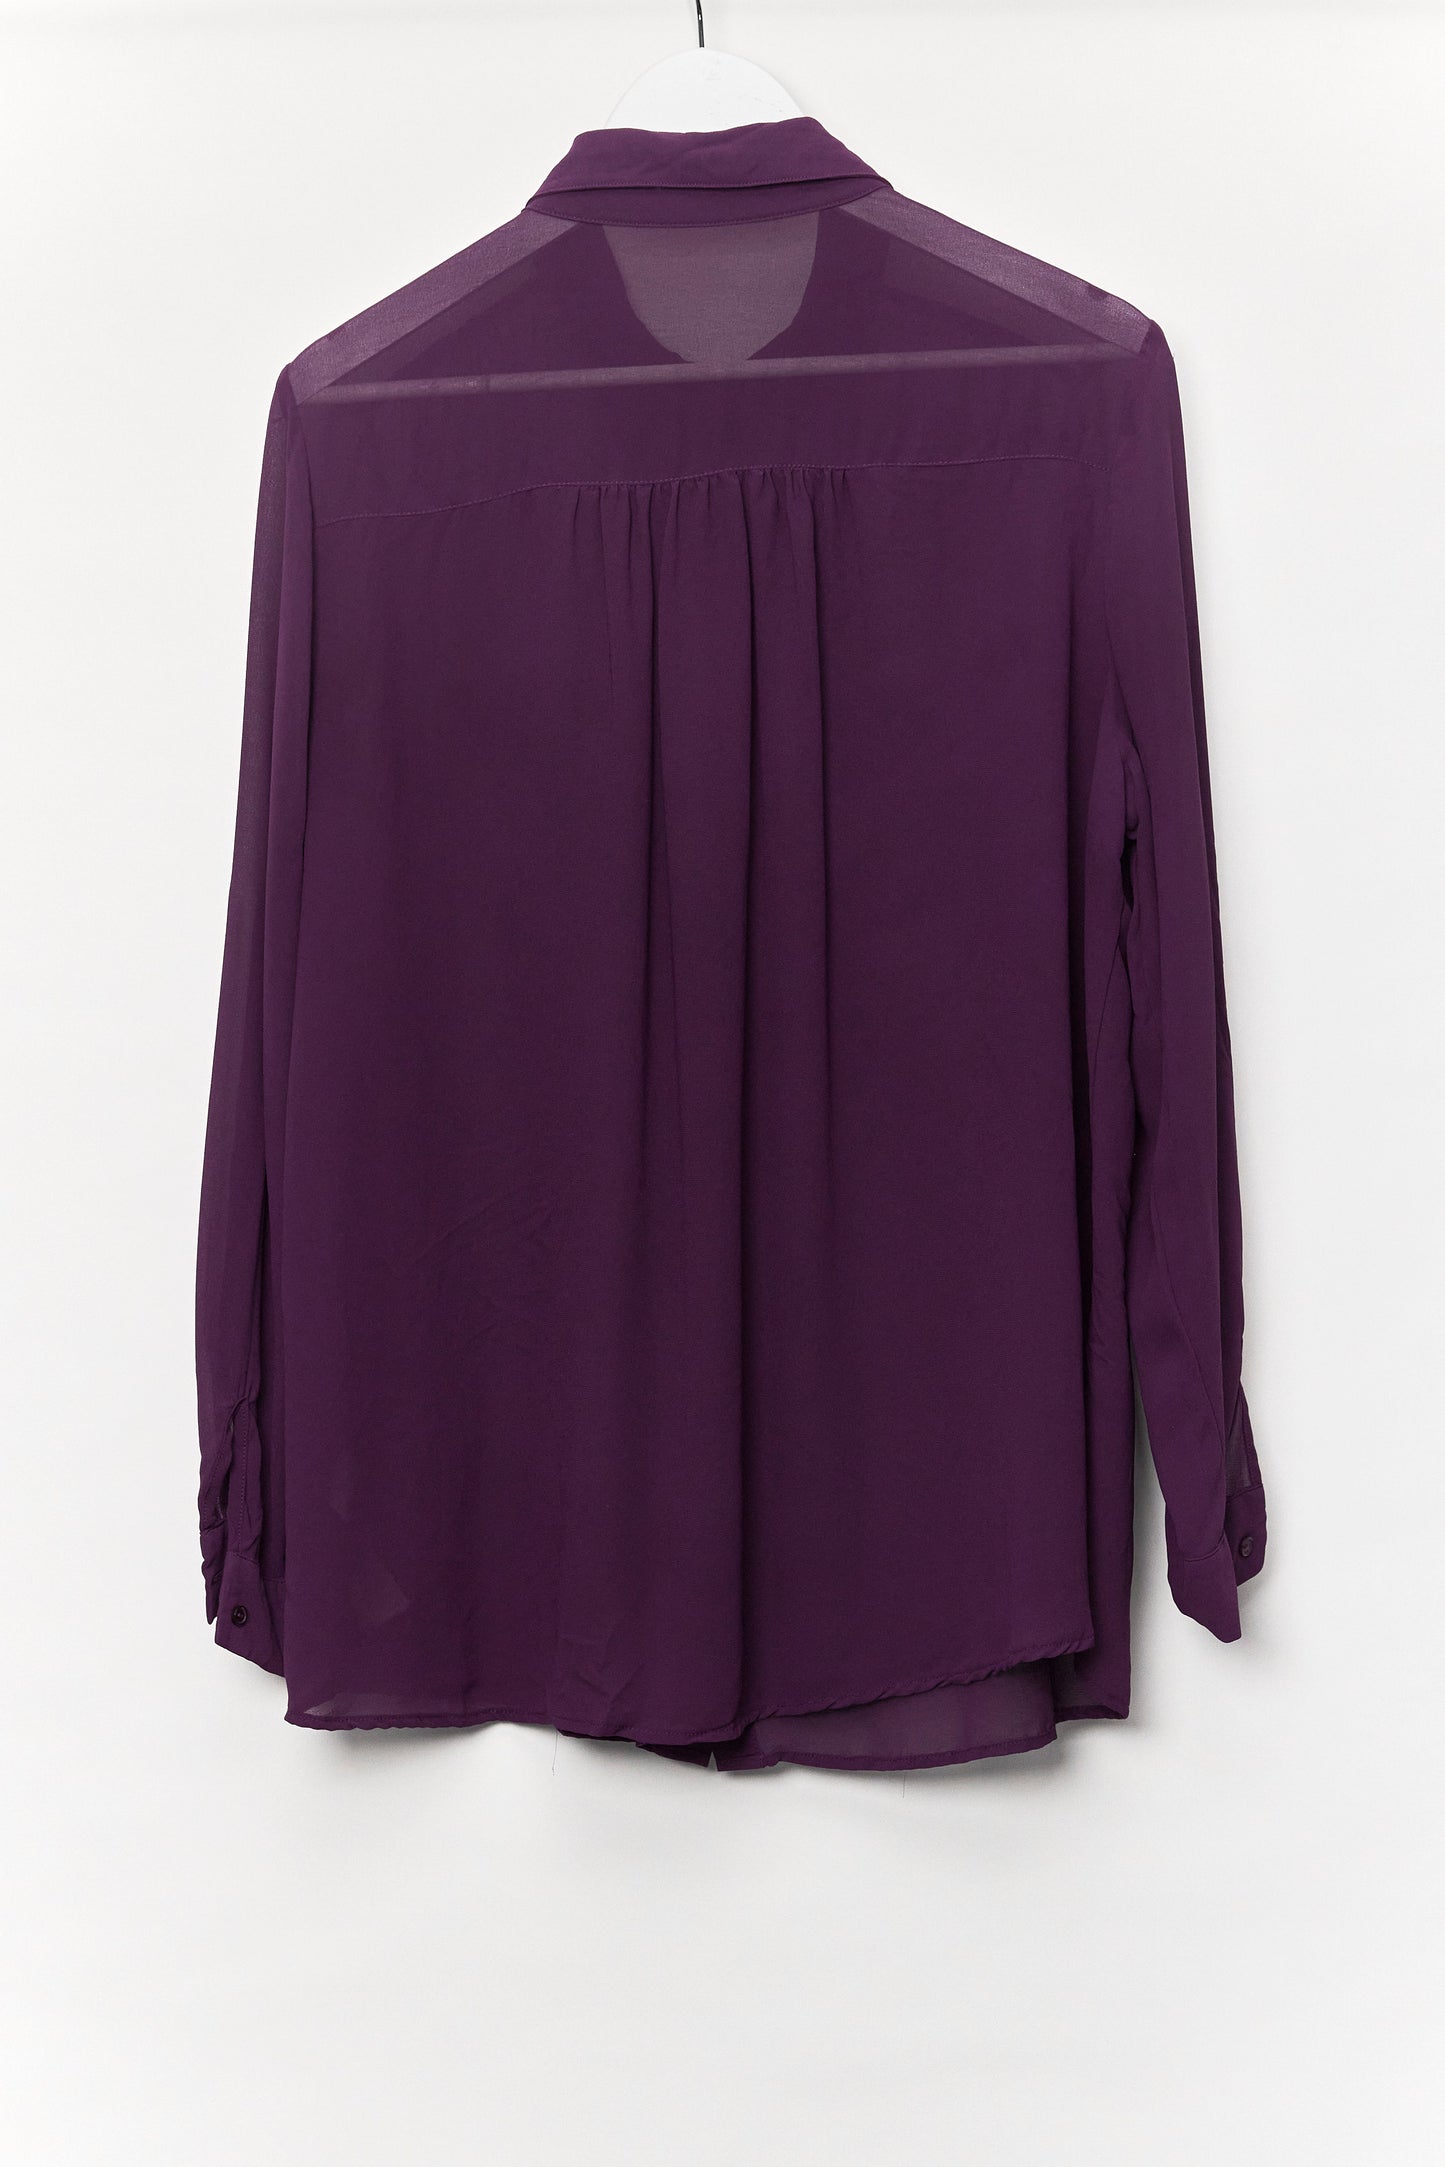 Womens Purple Sheer Shirt Size 20